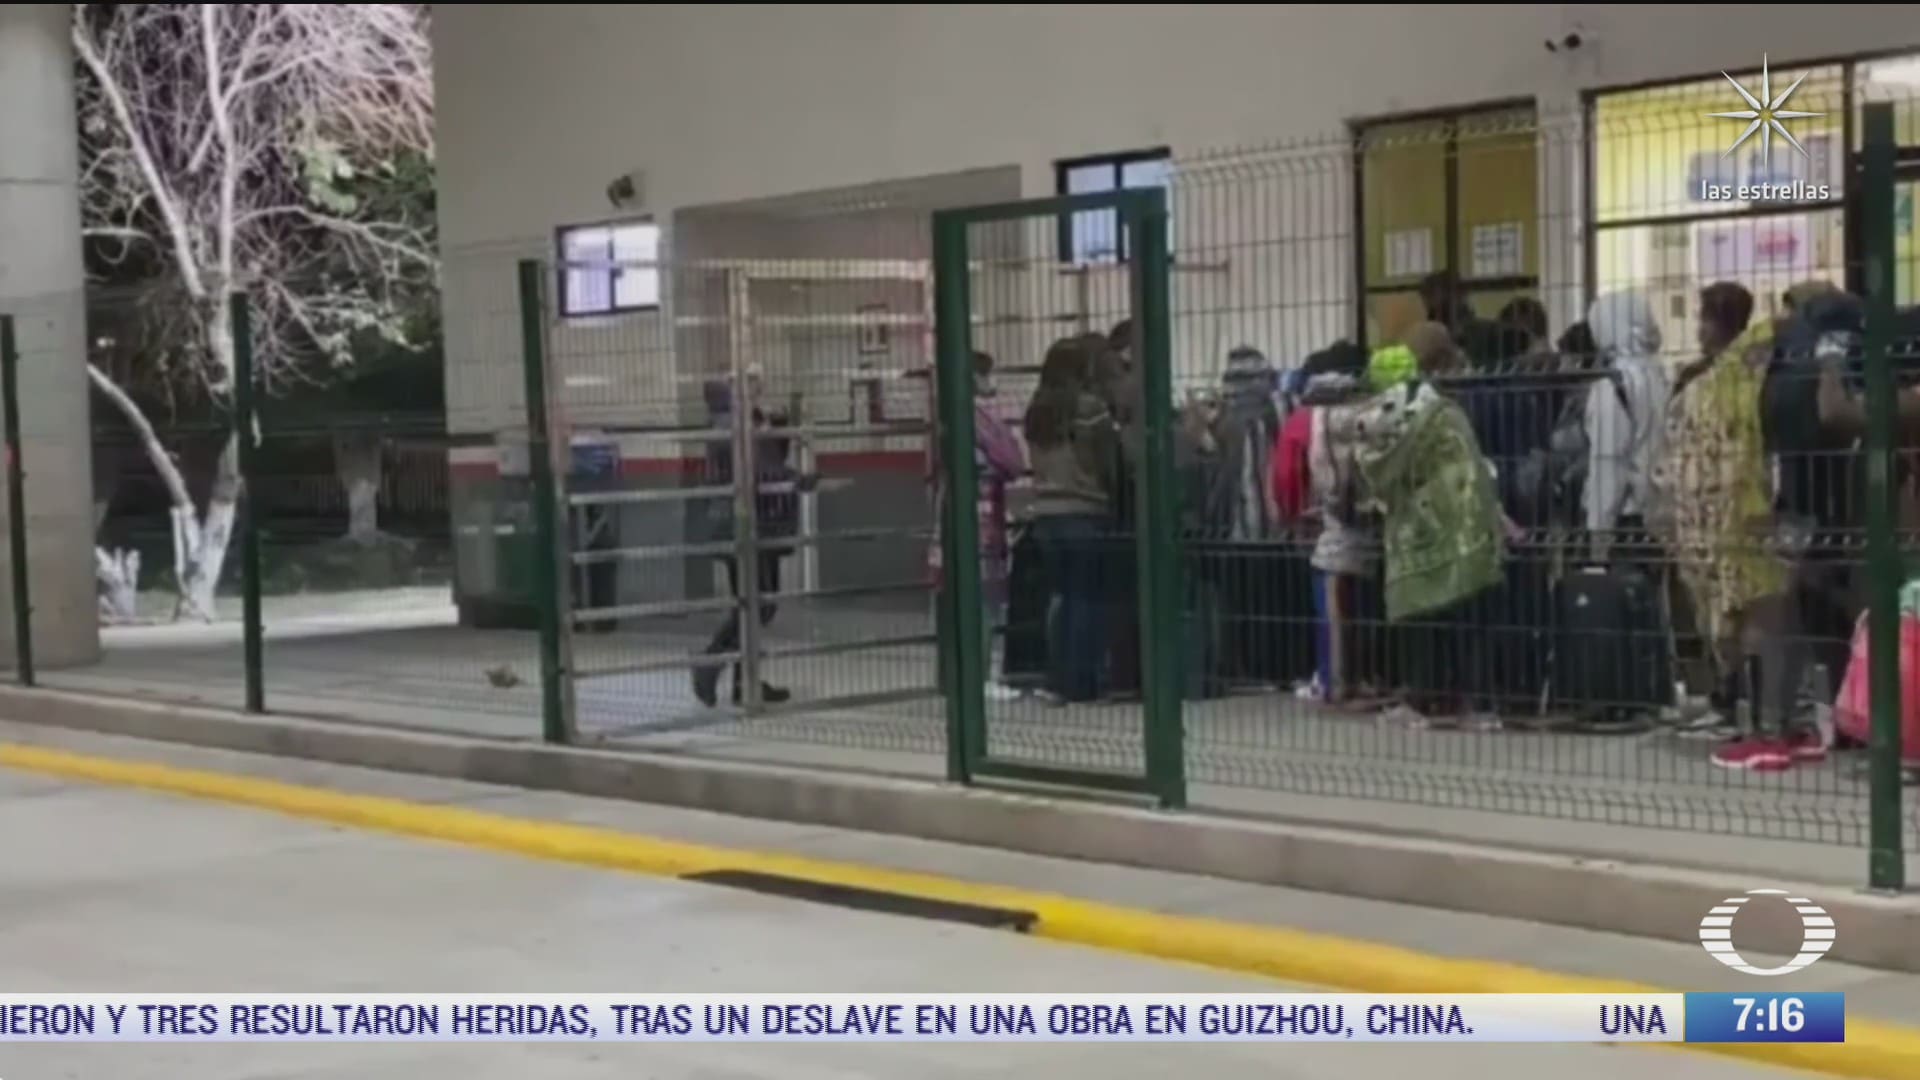 enganos sobre asilo humanitario provocan concentracion de decenas de migrantes hondurenos